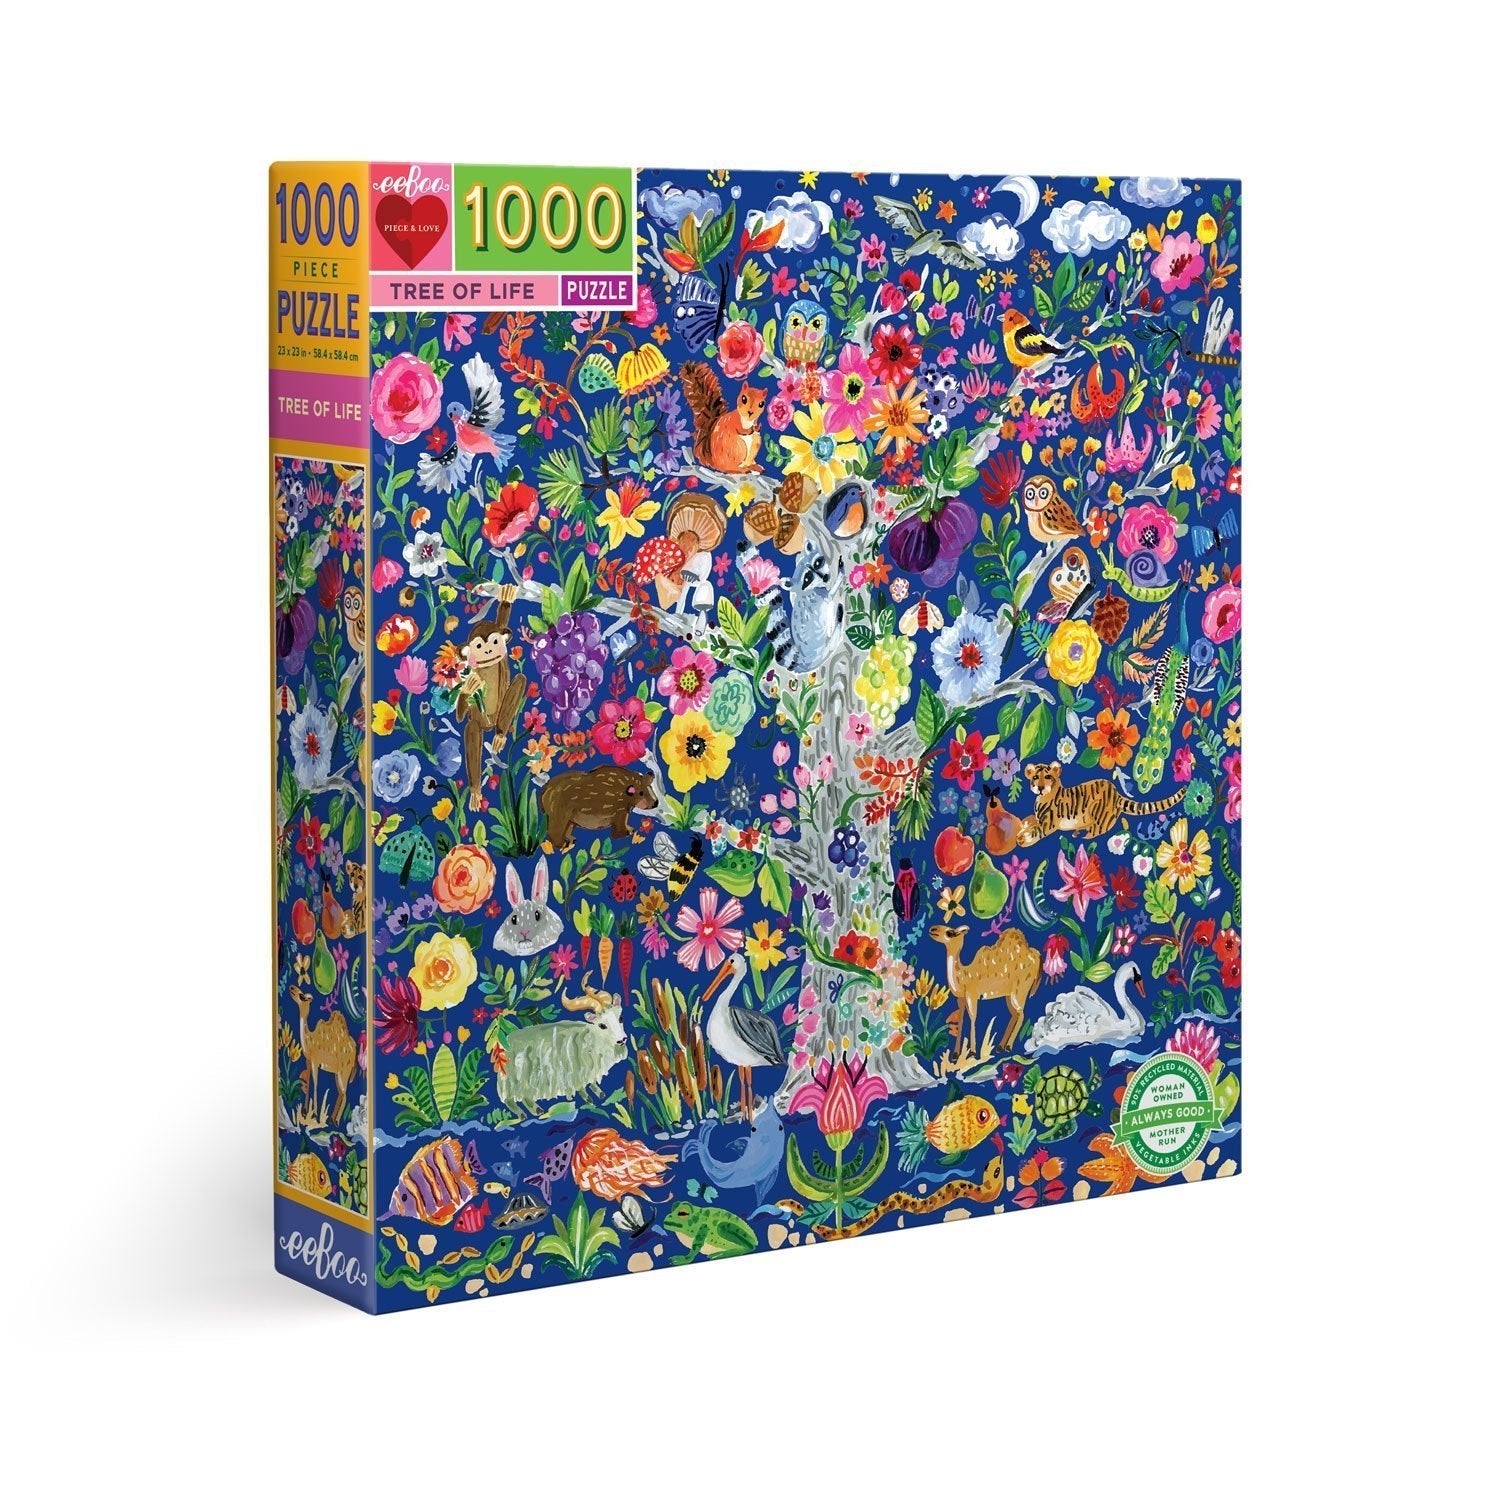 Puzzle Árbol de la vida - 1000 piezas